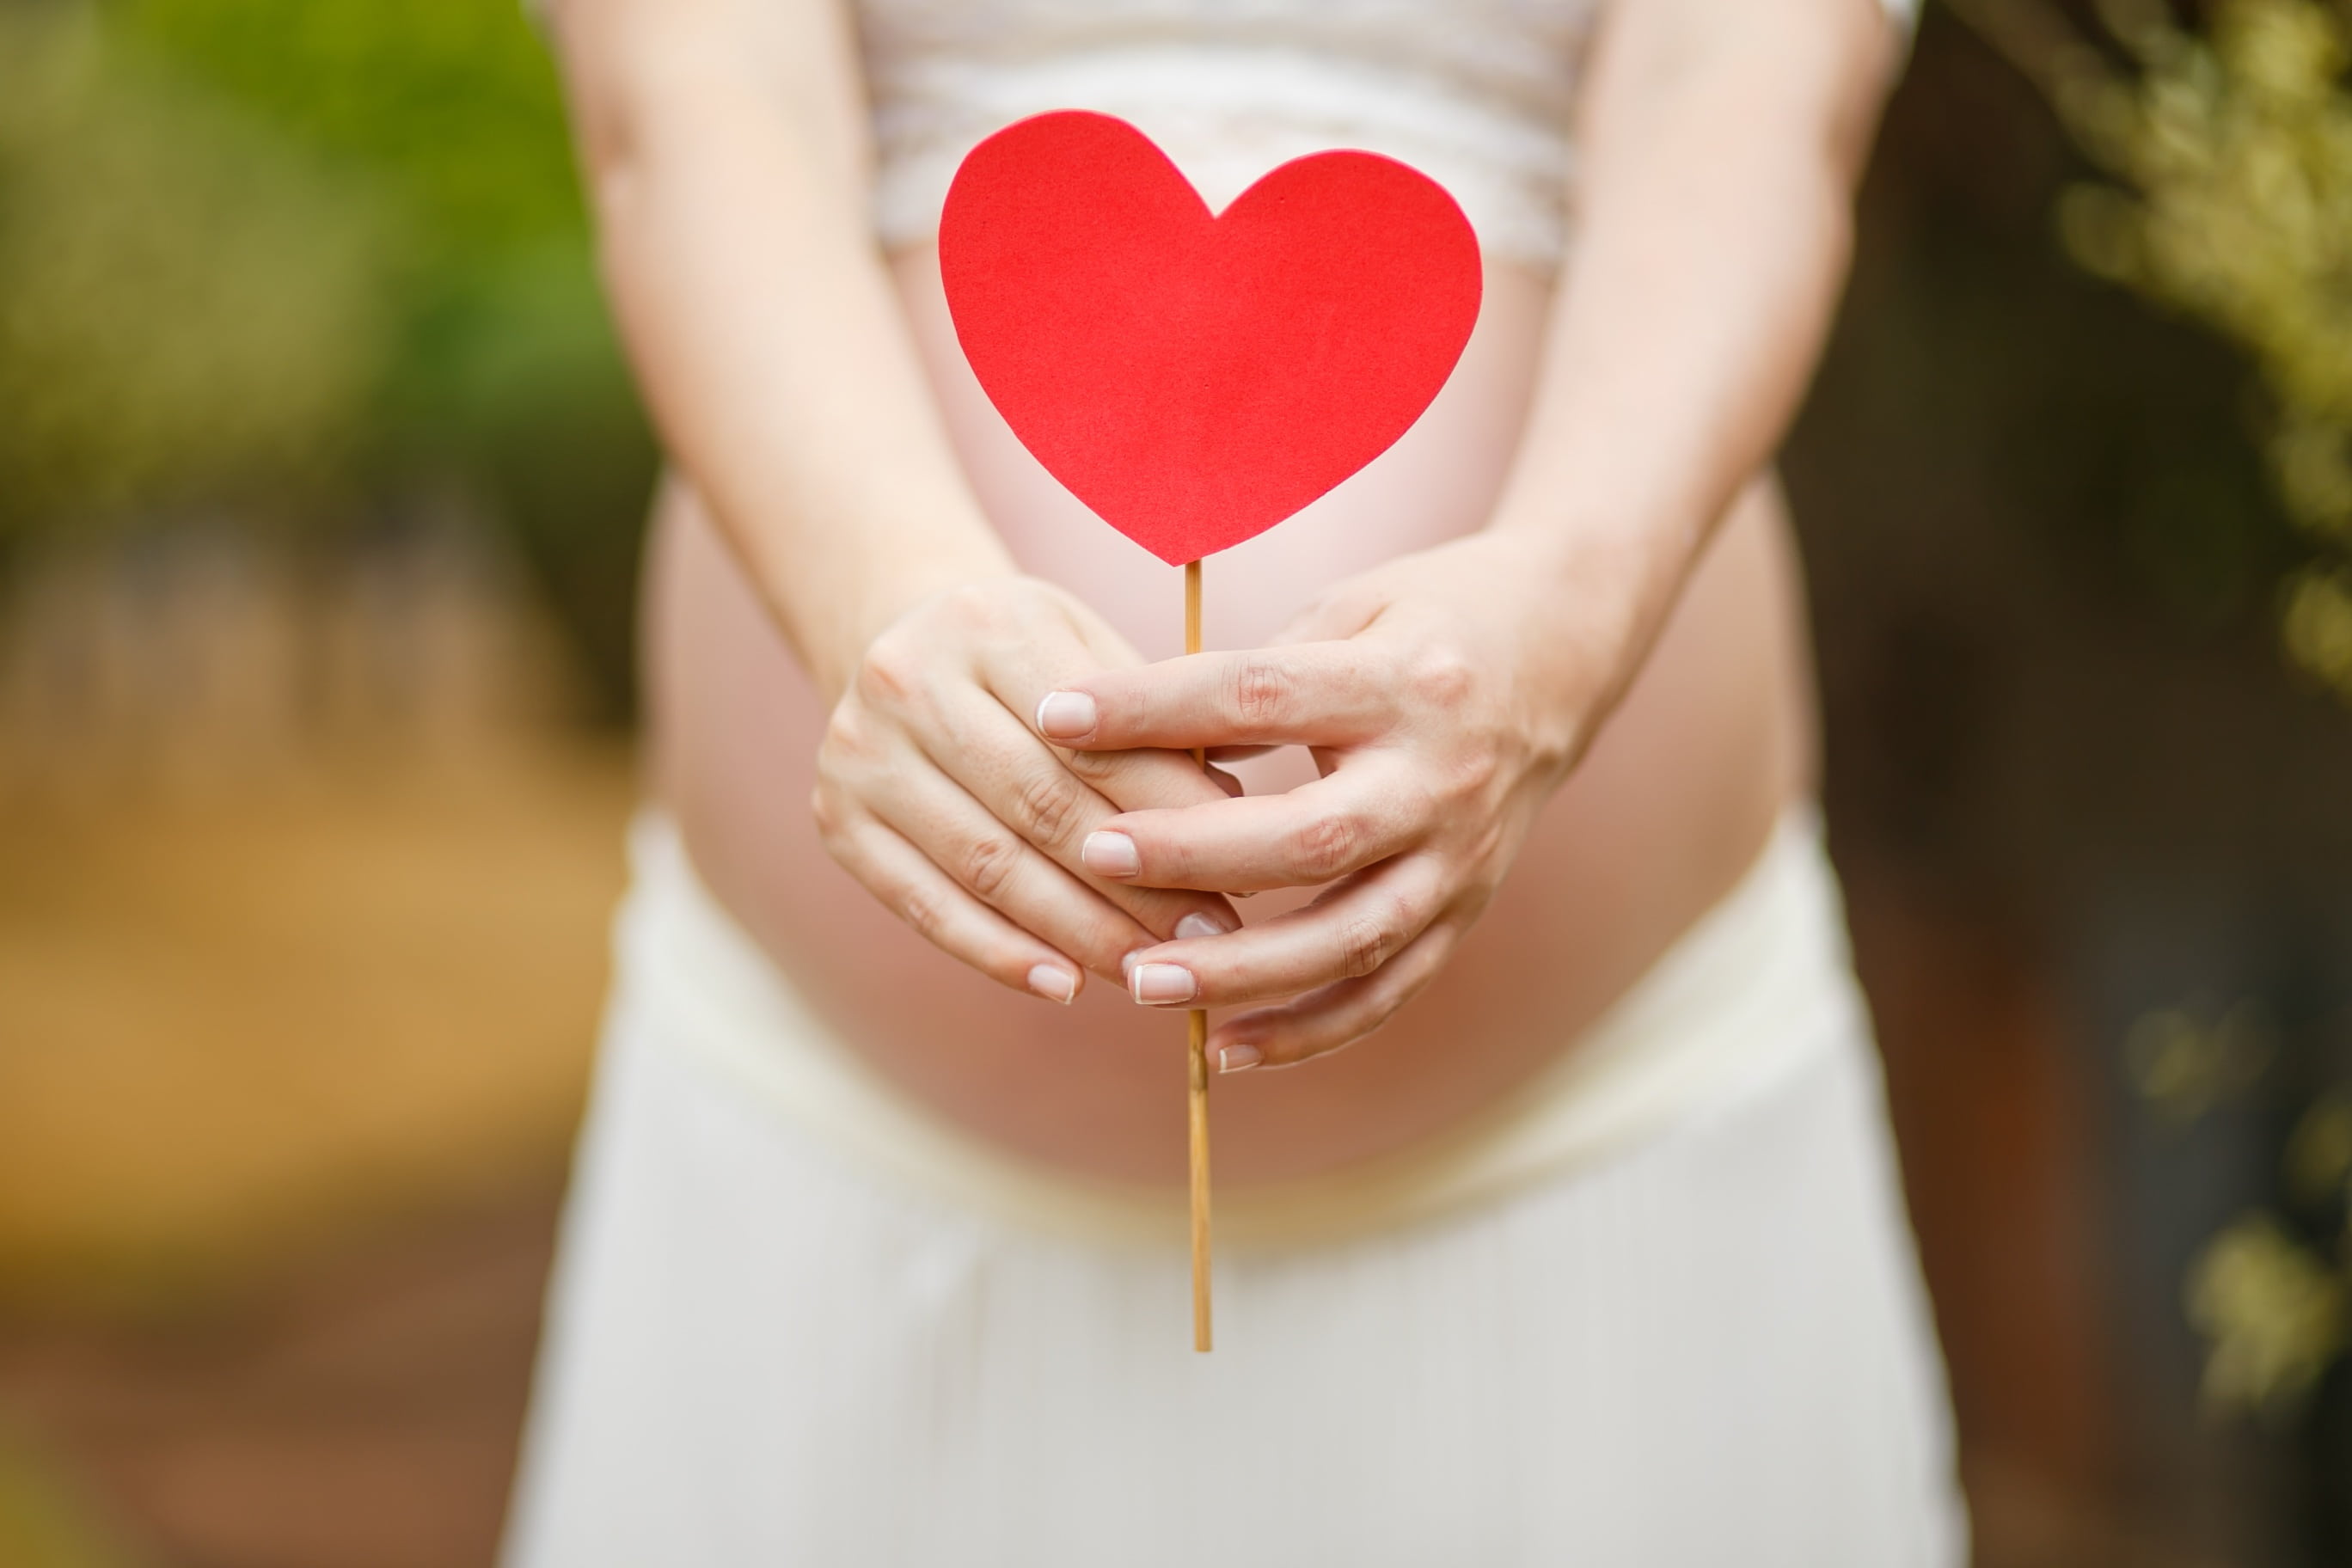 Hogyan ismerhető fel a terhességi magas vérnyomás?